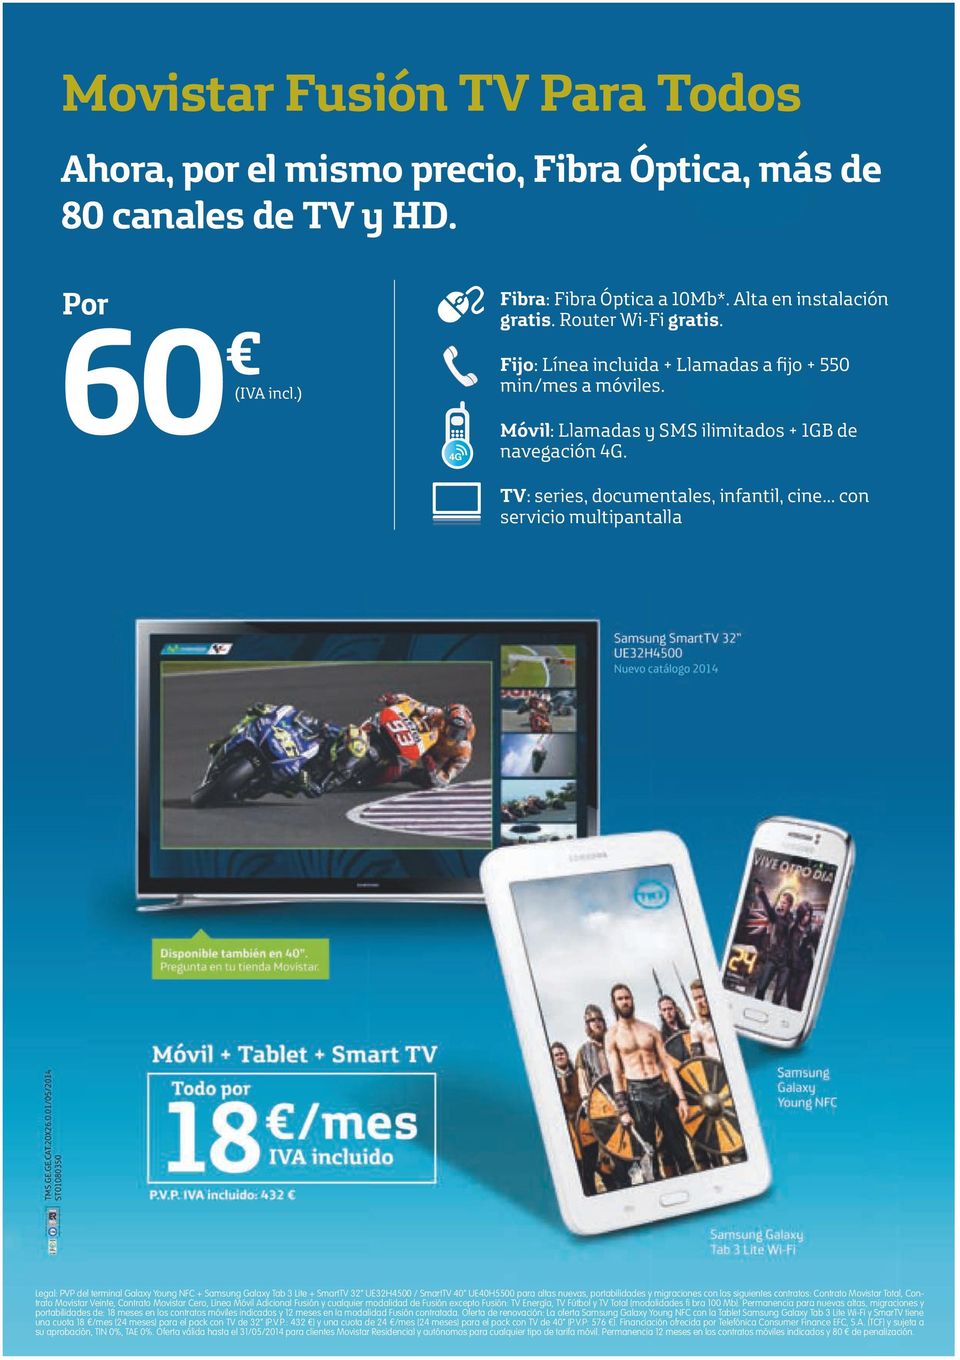 .. con servicio multipantalla Legal: PVP del terminal Galaxy Young NFC + Samsung Galaxy Tab 3 Lite + SmartTV 32 UE32H400 / SmartTV 40 UE40H00 para altas nuevas, portabilidades y migraciones con los